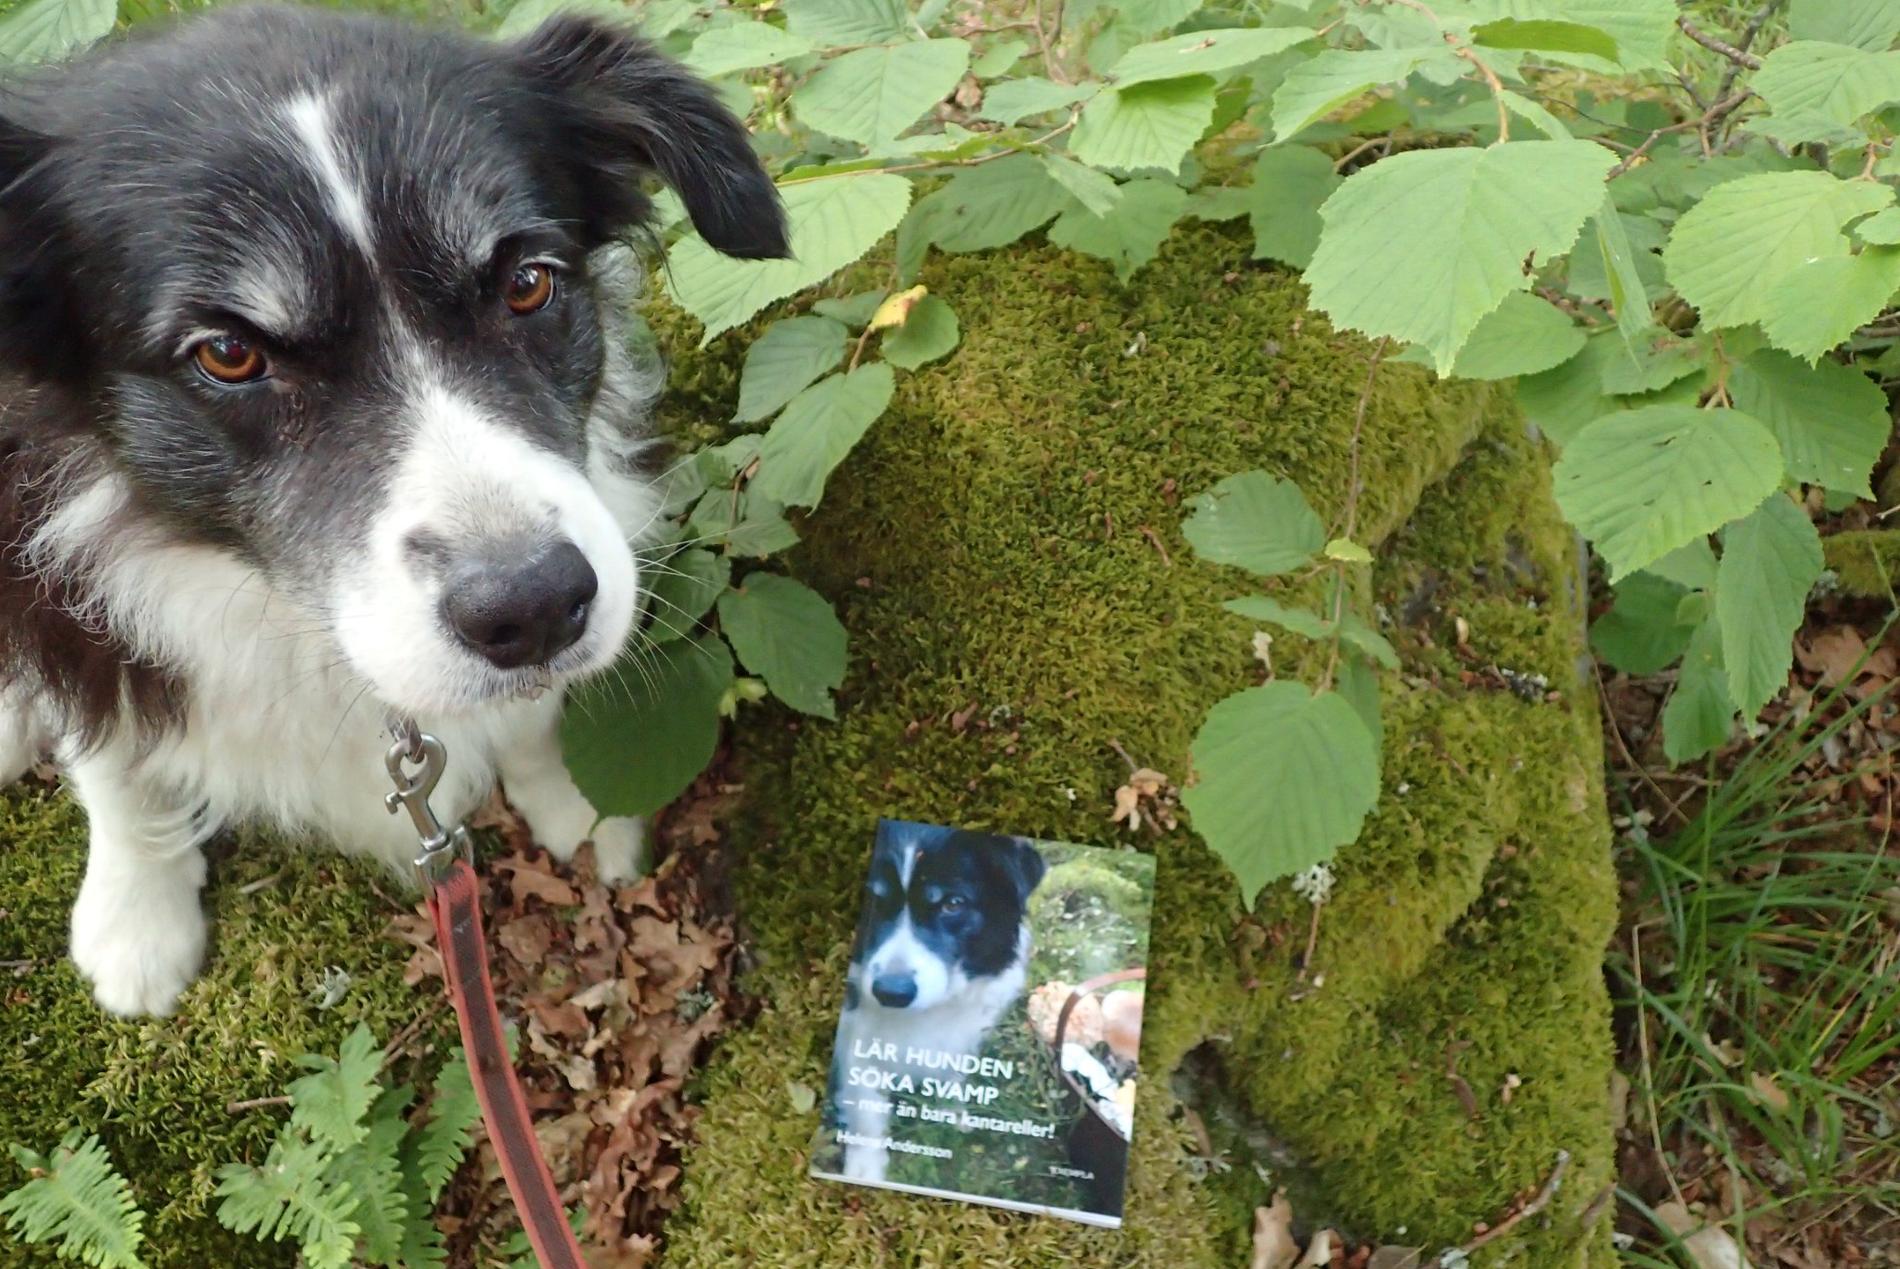 Wilma och boken ”Lär hunden söka svamp”.